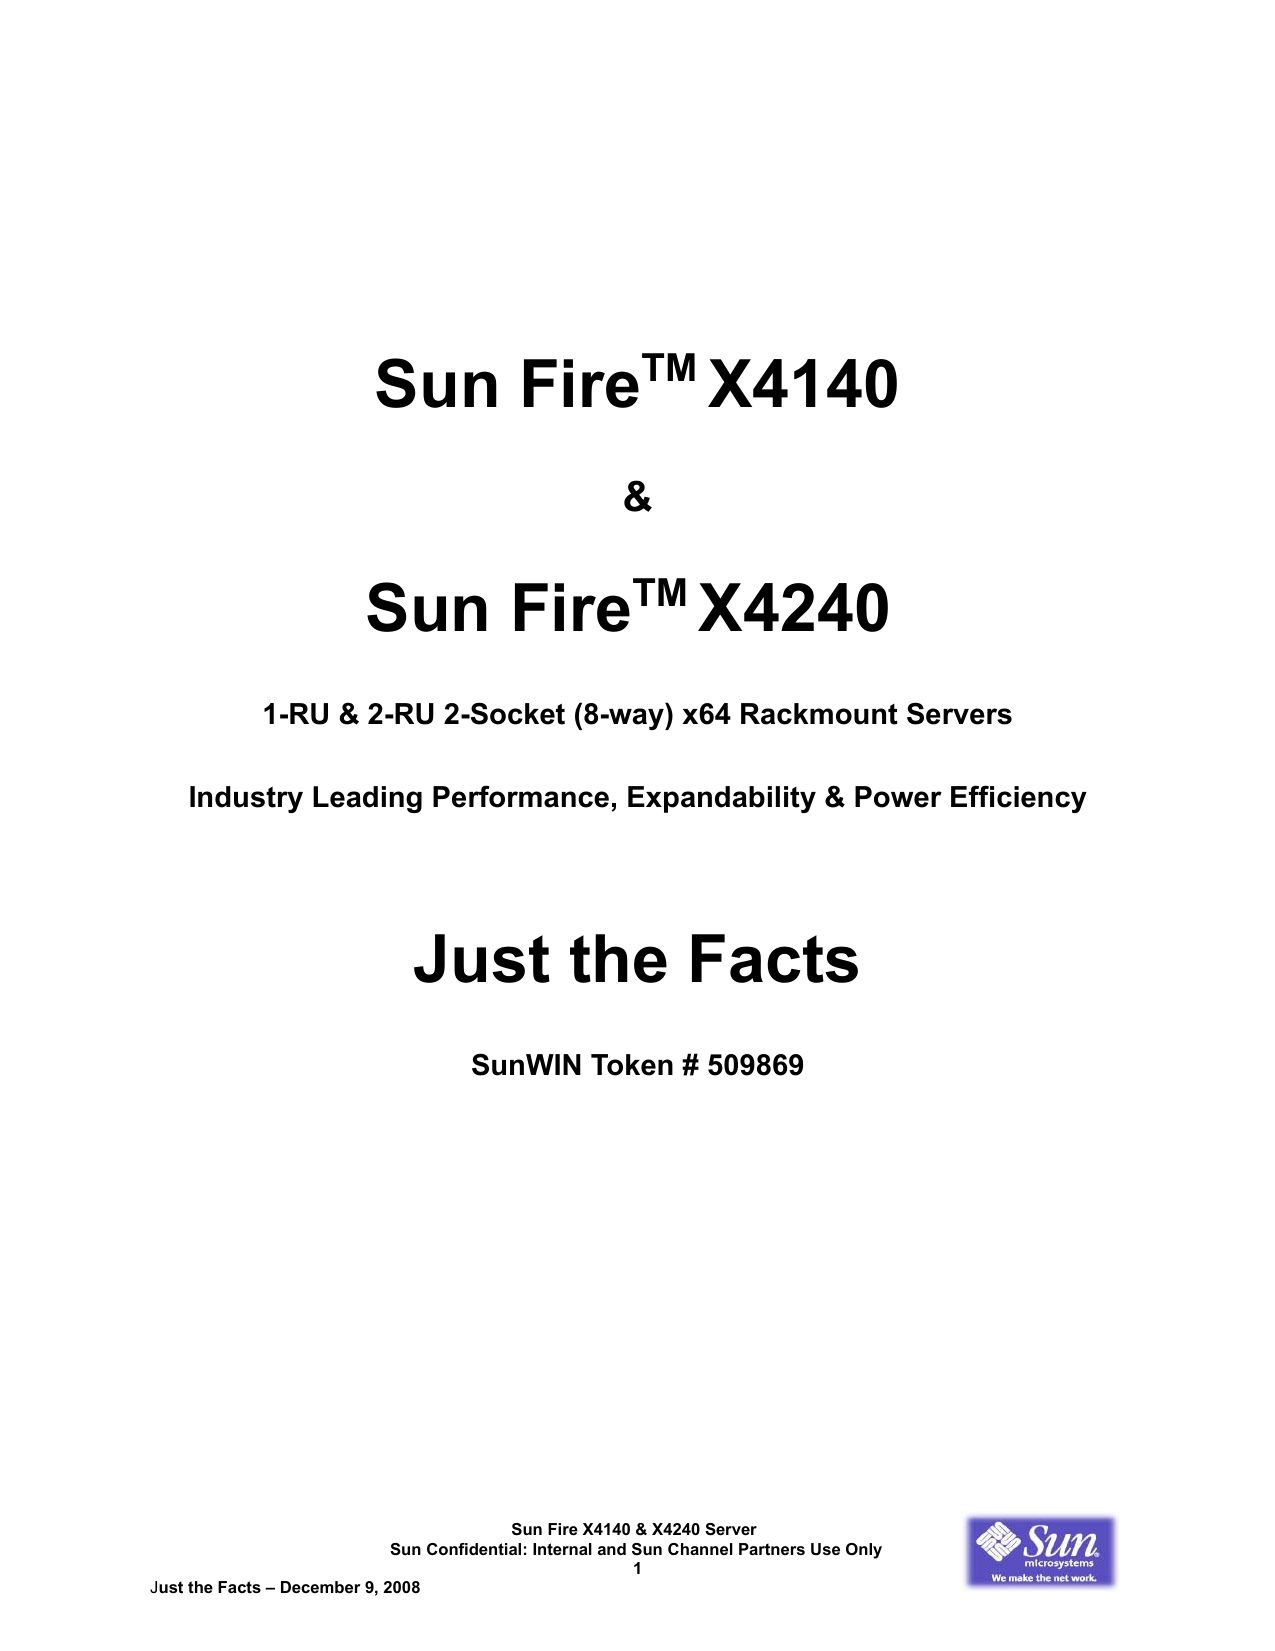 sun fire x4150 memory